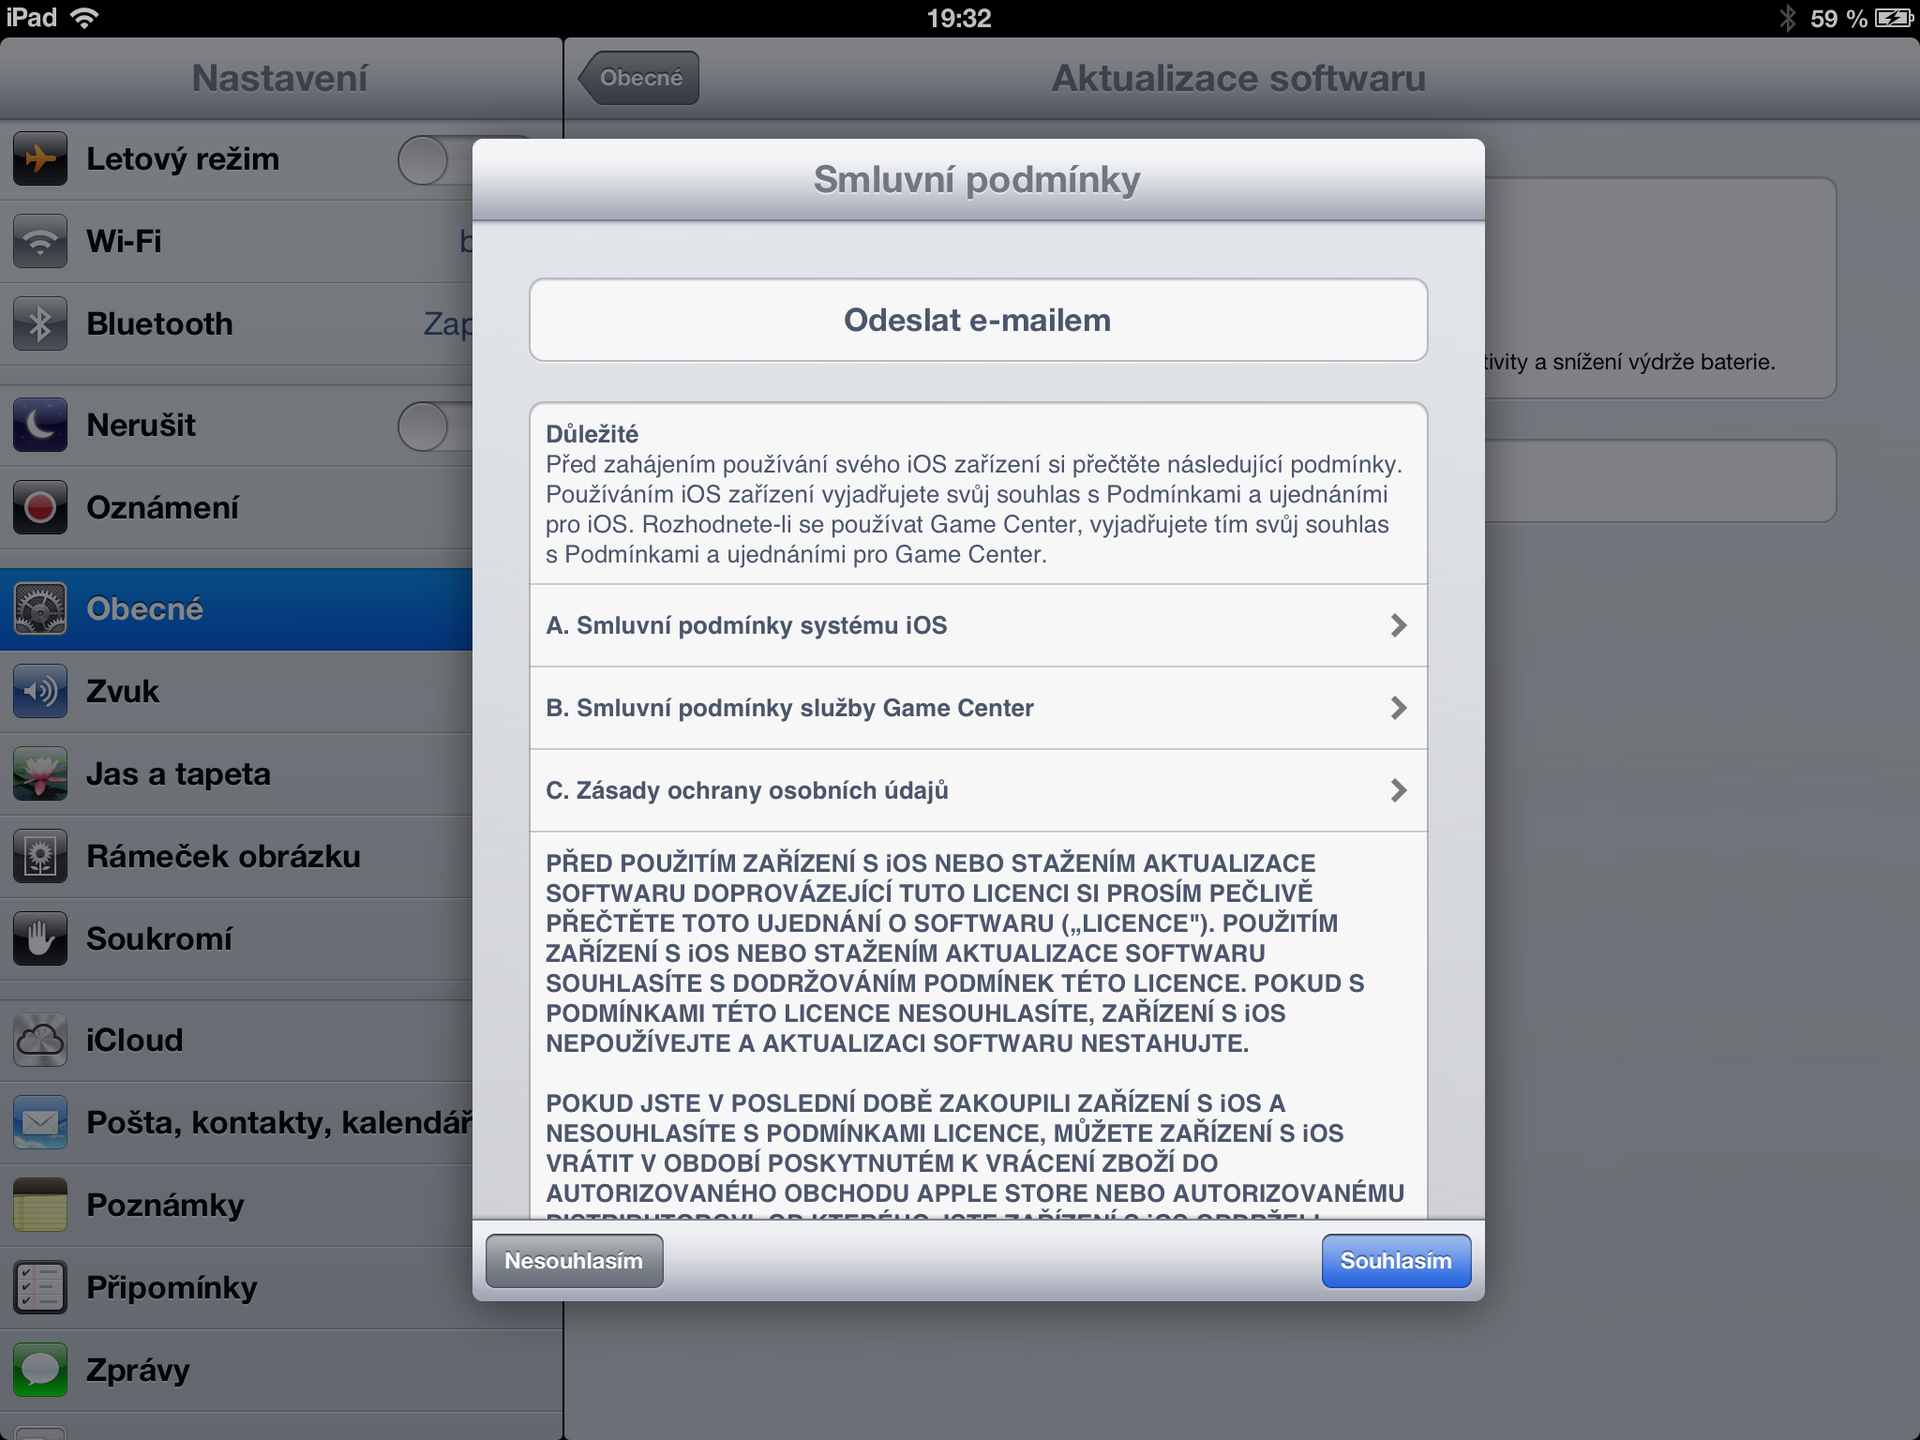 iOS 6.1.2